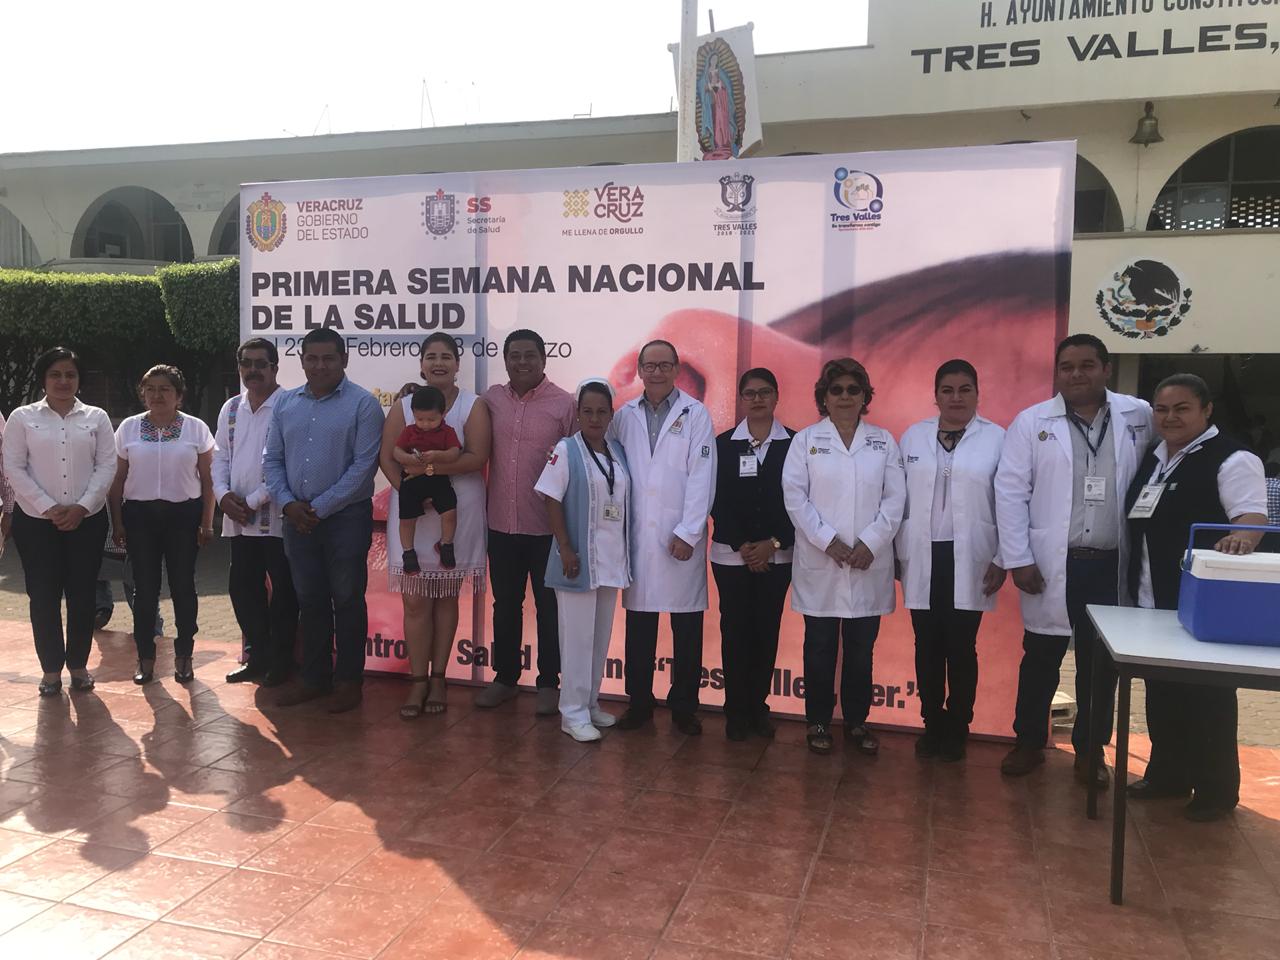 Se inauguró Primera Semana Nacional de Salud en Tres Valles